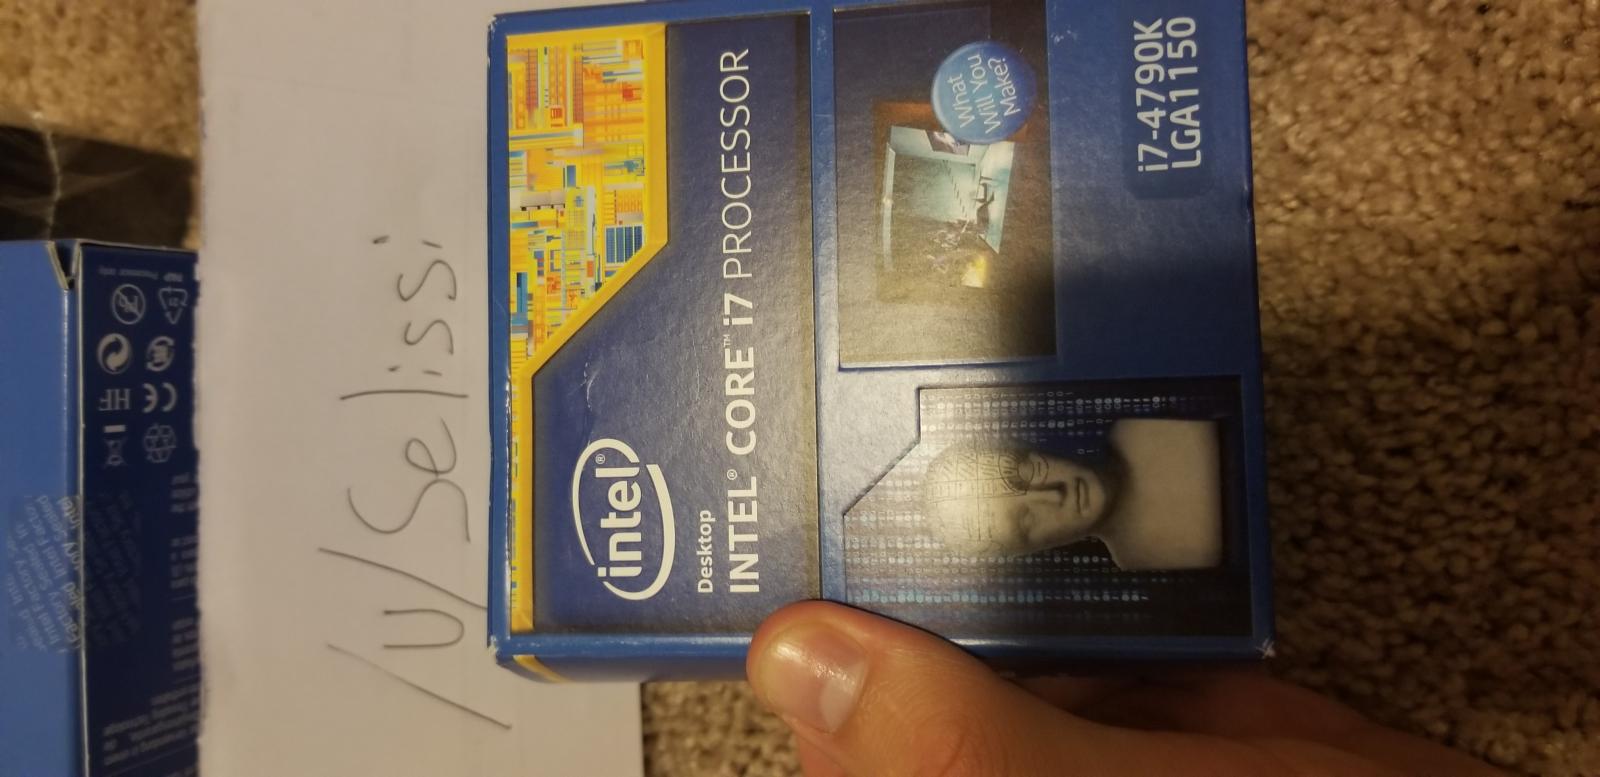 For sale Intel i7 4790k